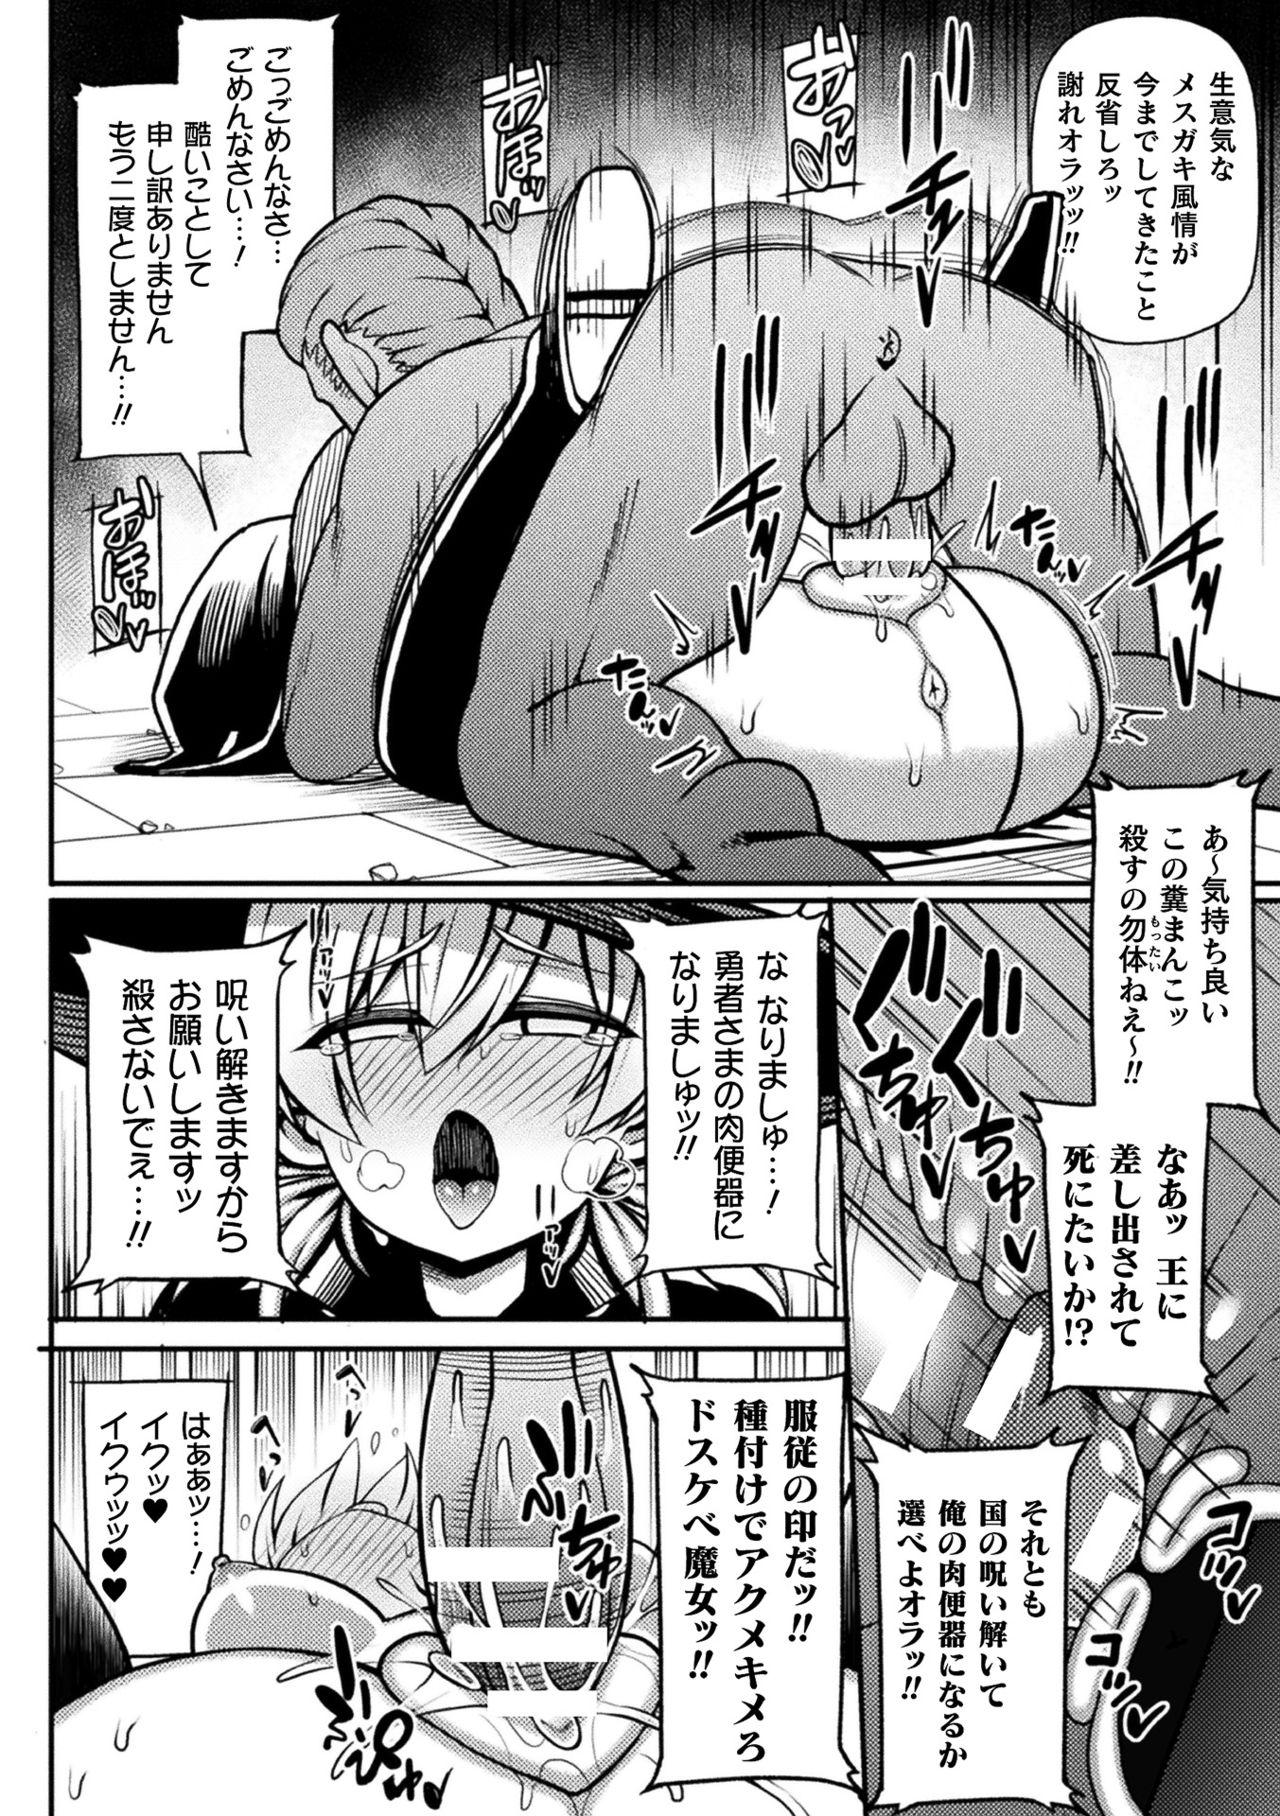 2D Comic Magazine Mesugaki Henshin Heroine Seisai Wakarase-bou ni wa Katemasen deshita! Vol. 2 39